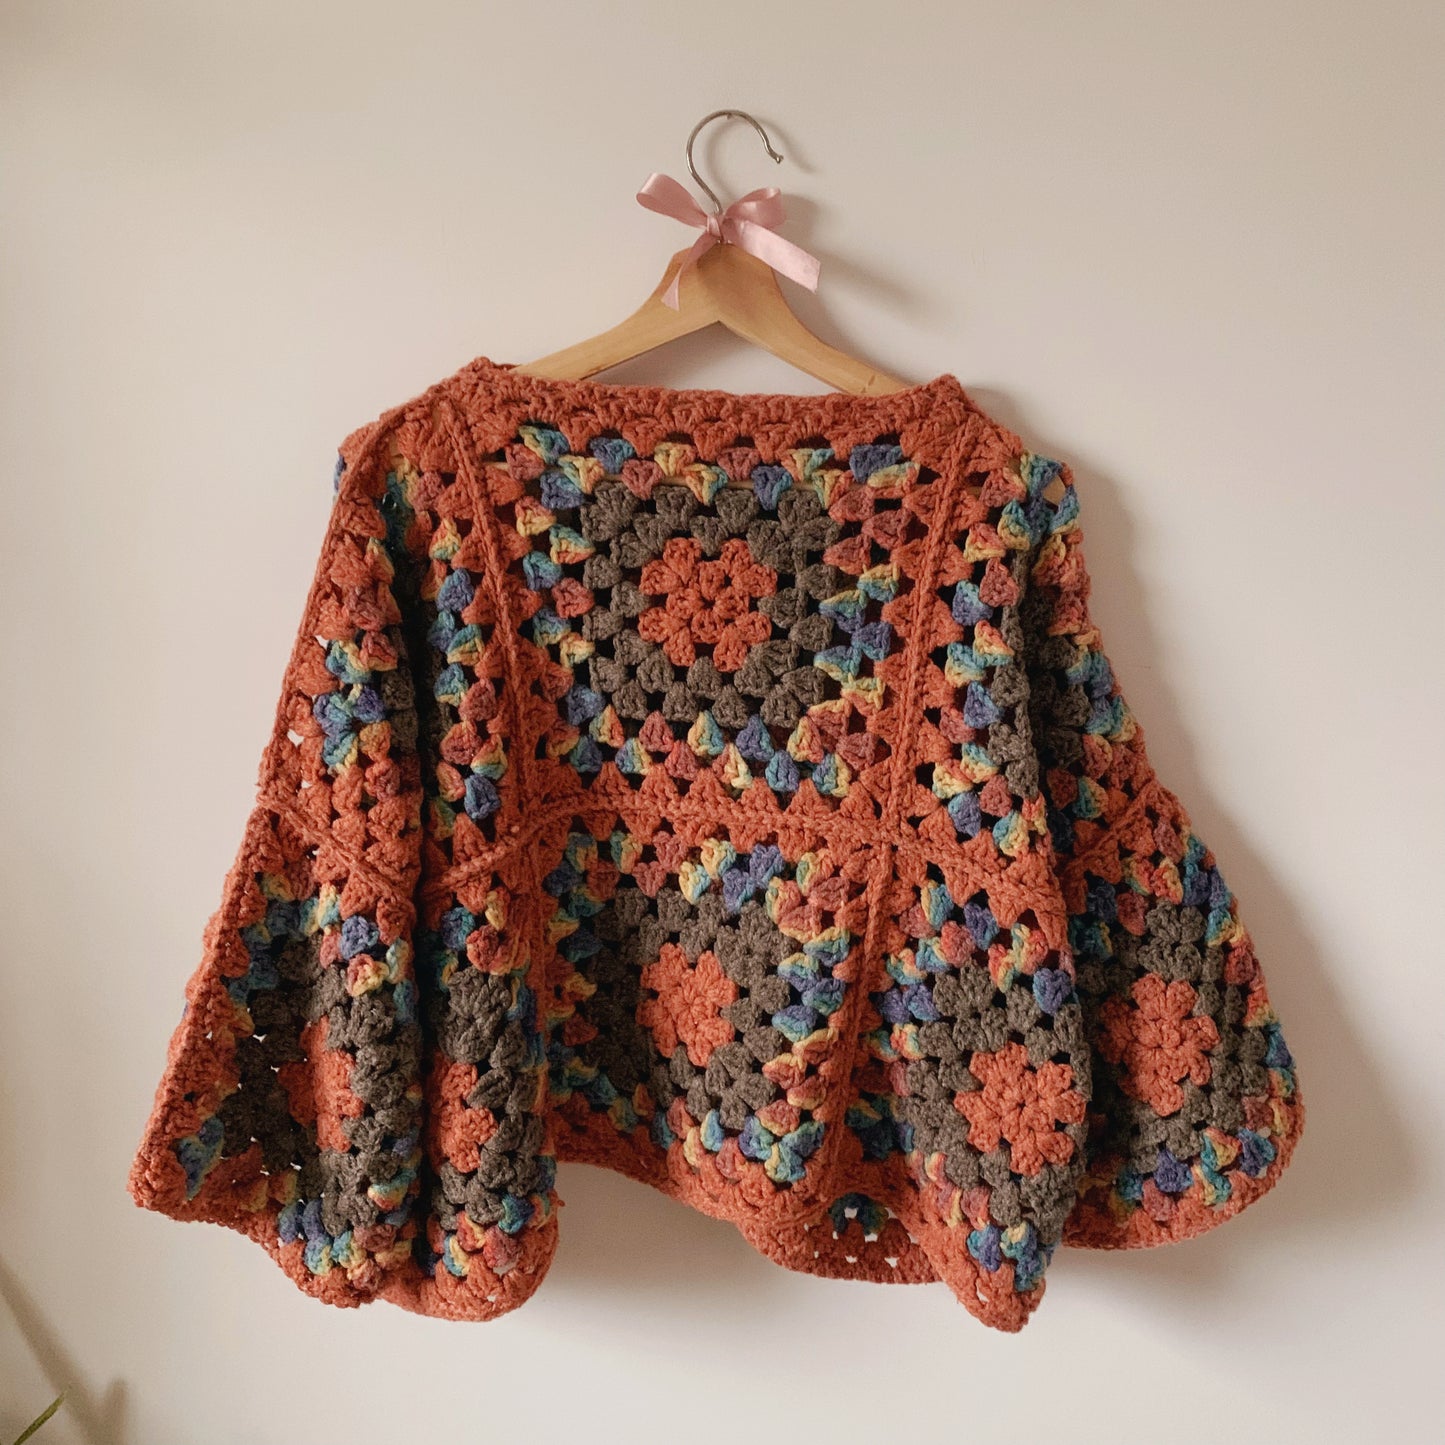 Granny Square Sweater